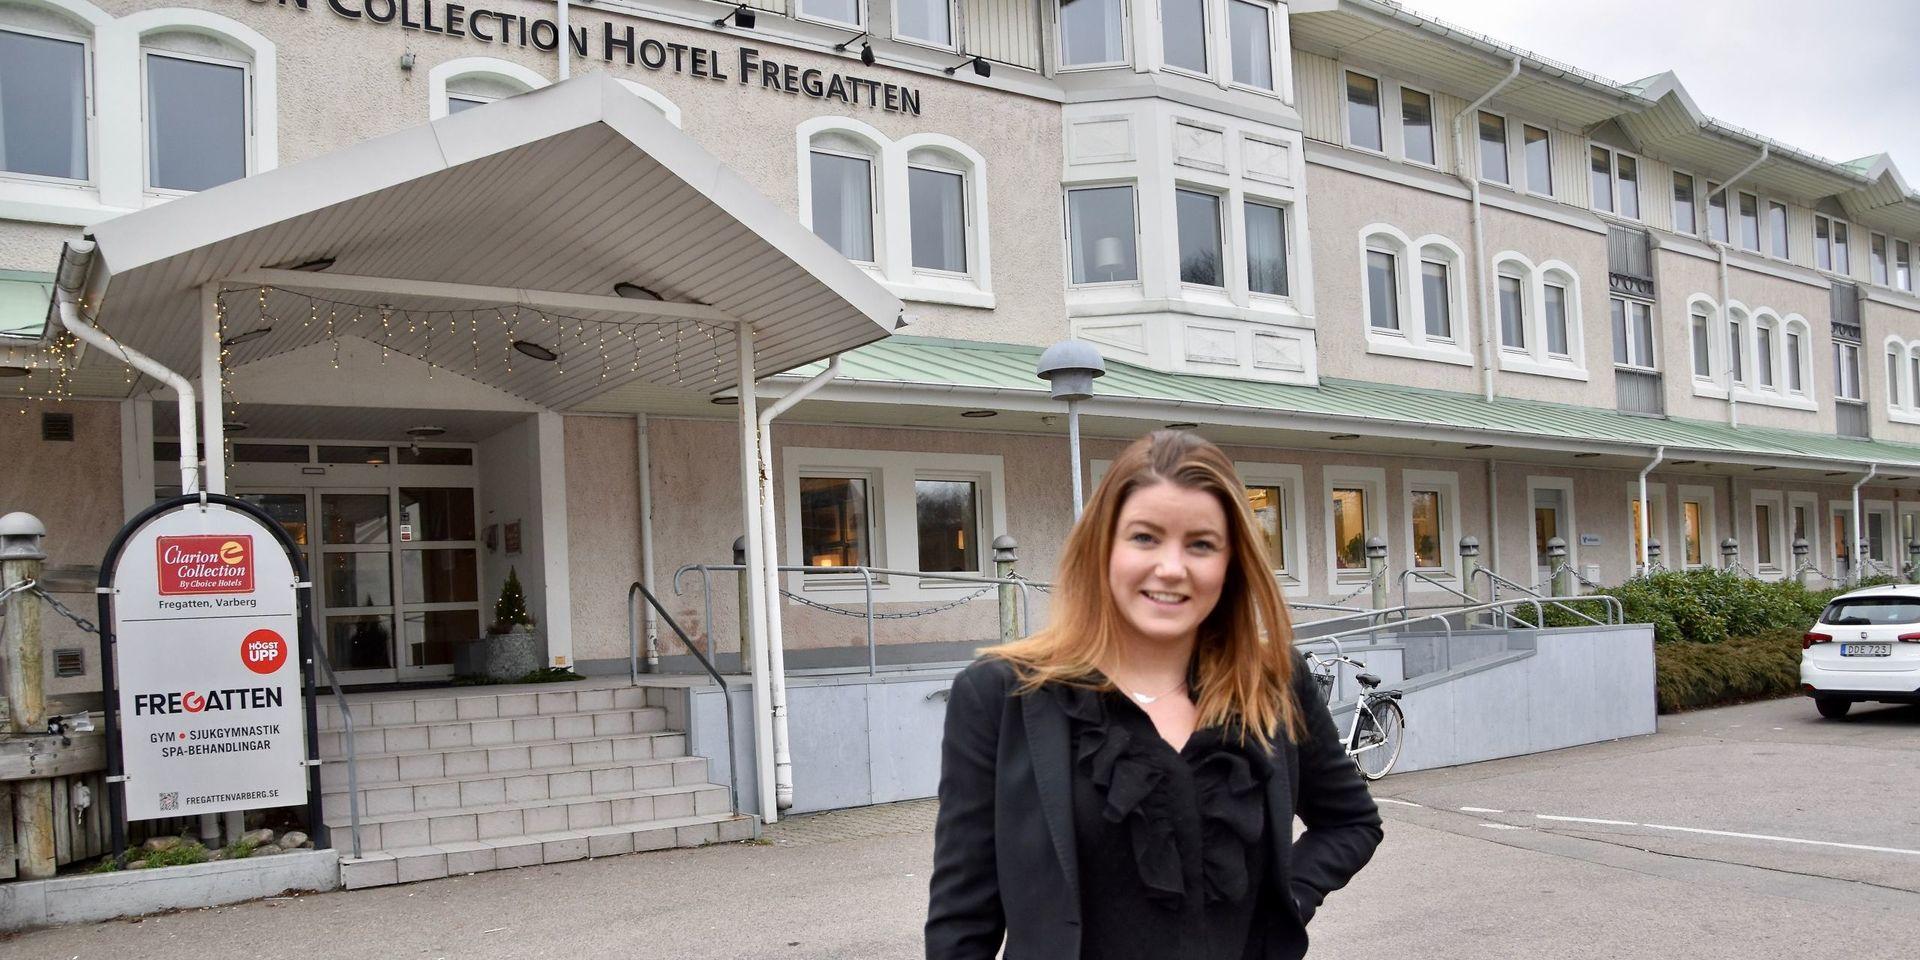 Hotelldirektören Josefine Gudmundsson kämpar mot coronans effekter. Nu vill hon stötta kommunen. &quot;Vi vill vara tydliga med att vi finns om kommunen behöver hjälp&quot;, säger hon.